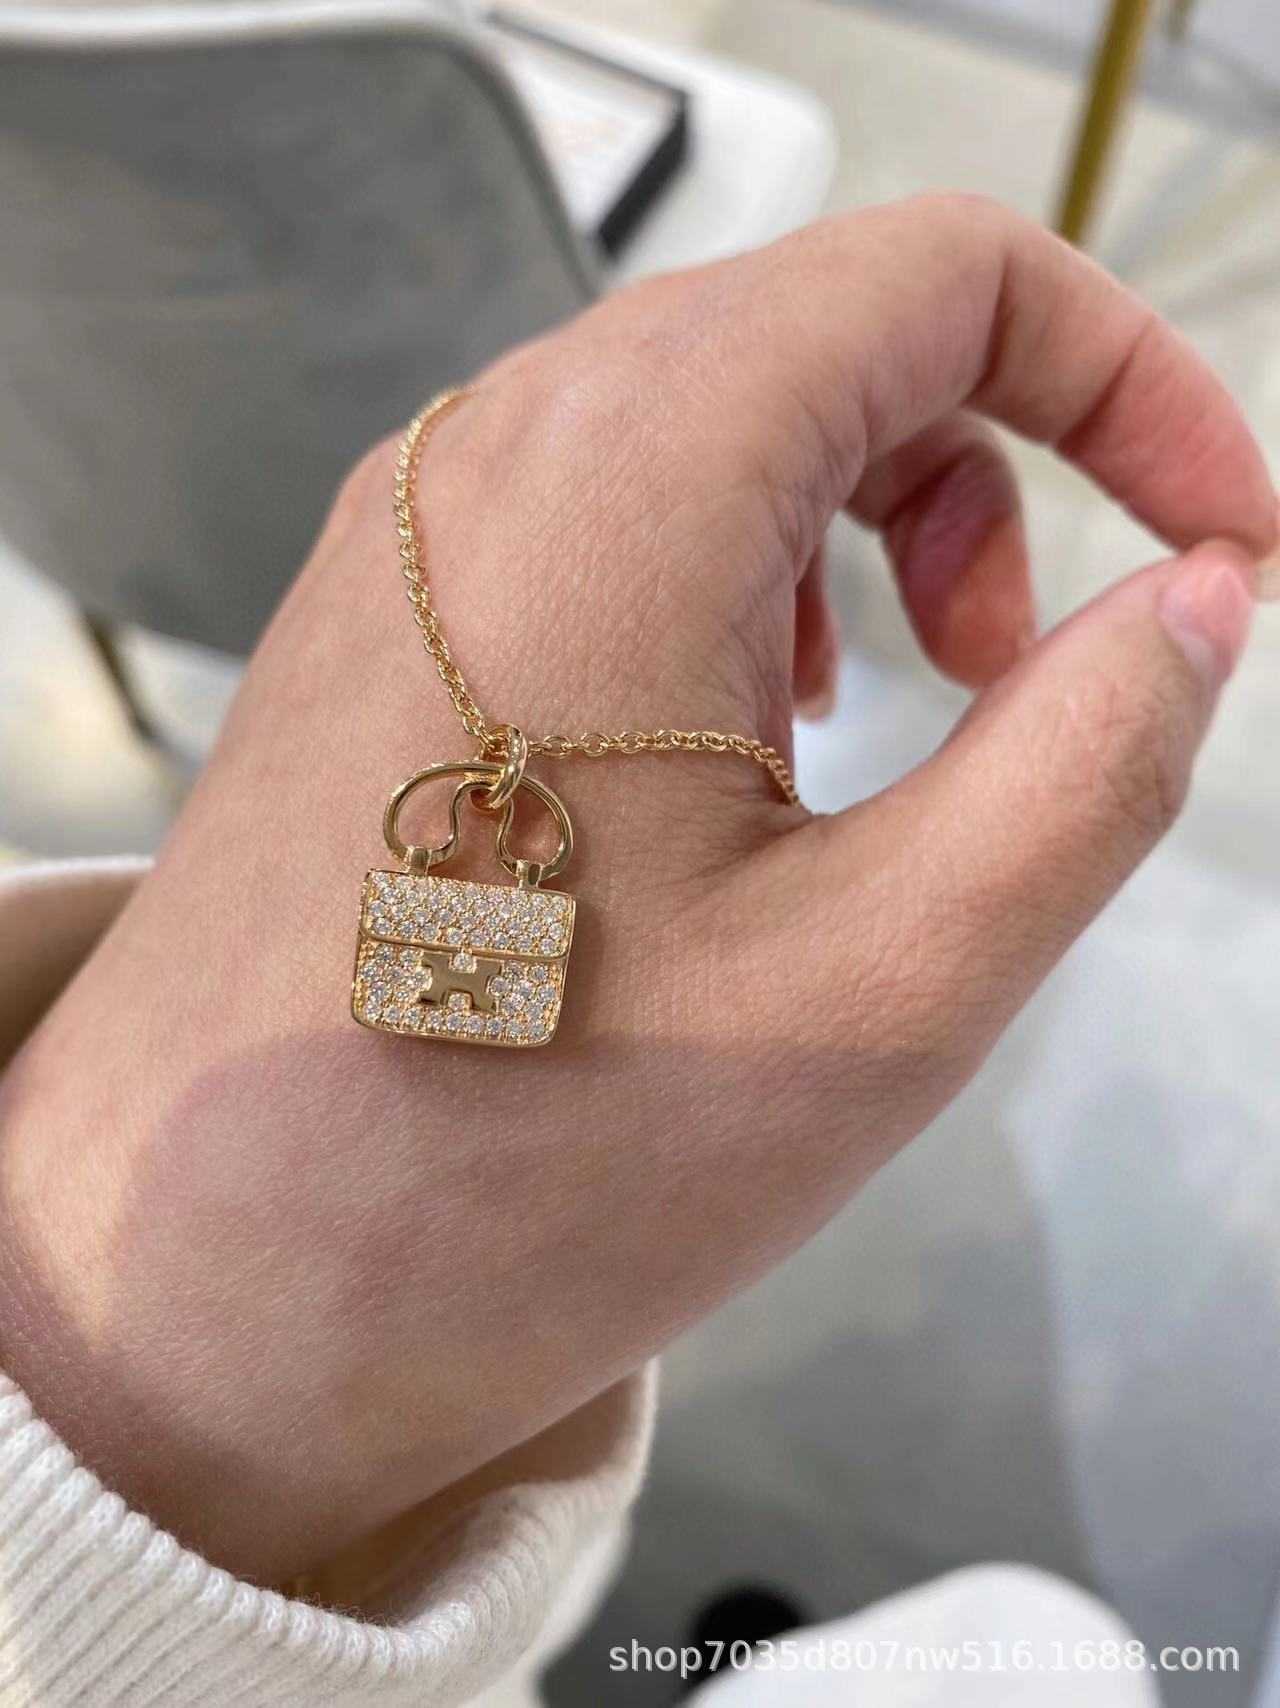 V-gold nouveau collier de sac Kangkang pour femme avec chaîne de clavicule de célébrité Internet plaquée diamant en or rose 18 carats simple et à la mode